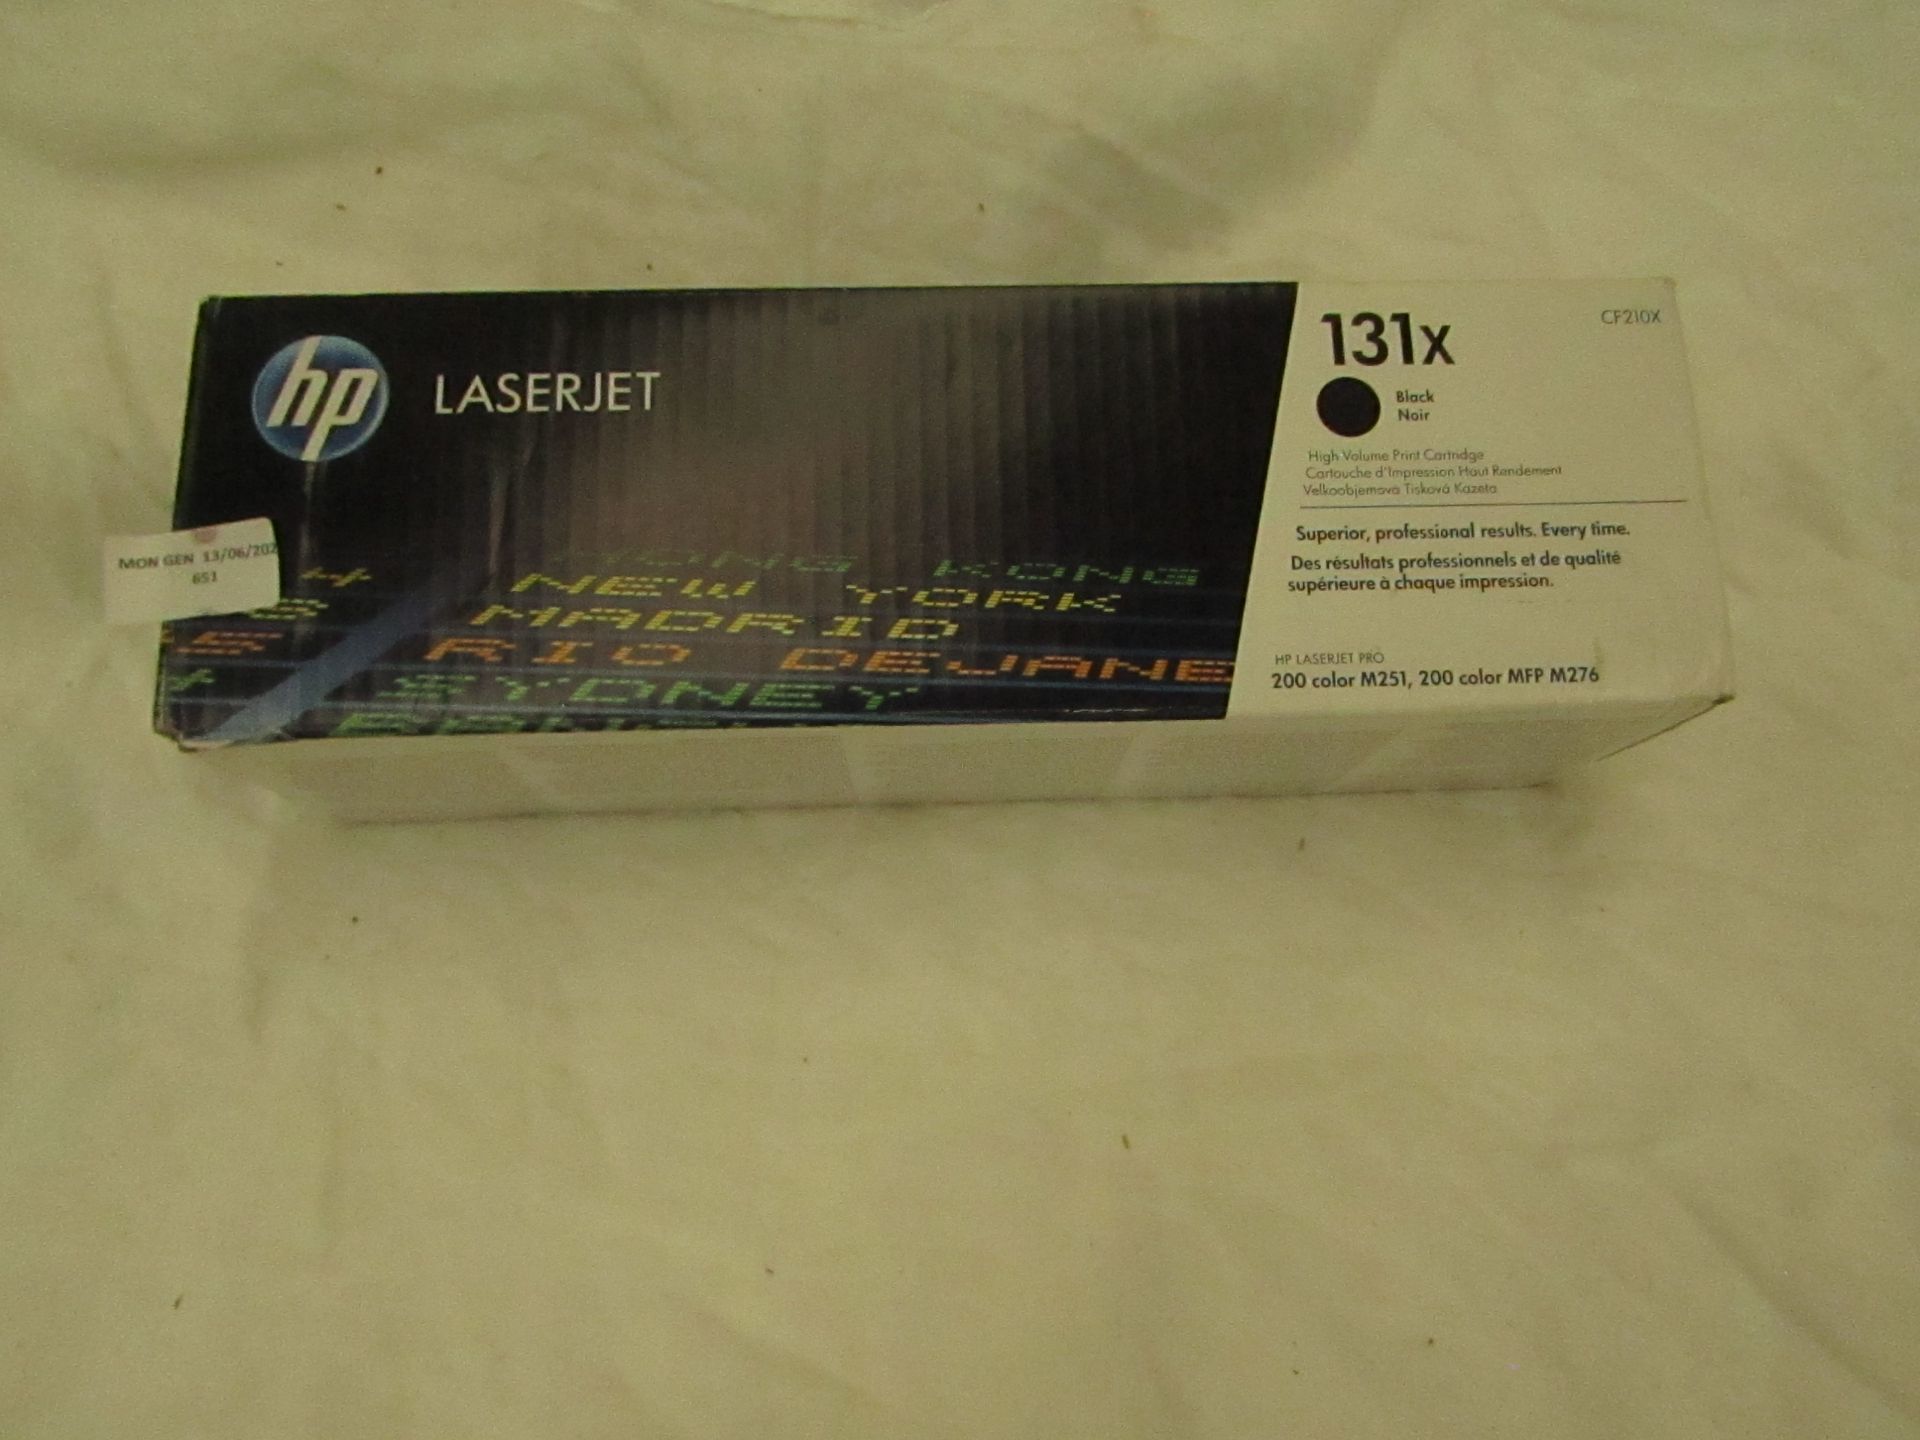 HP - LaserJet High Volume Print Cartridge ( CF210X ) - Black - Unused & Boxed.